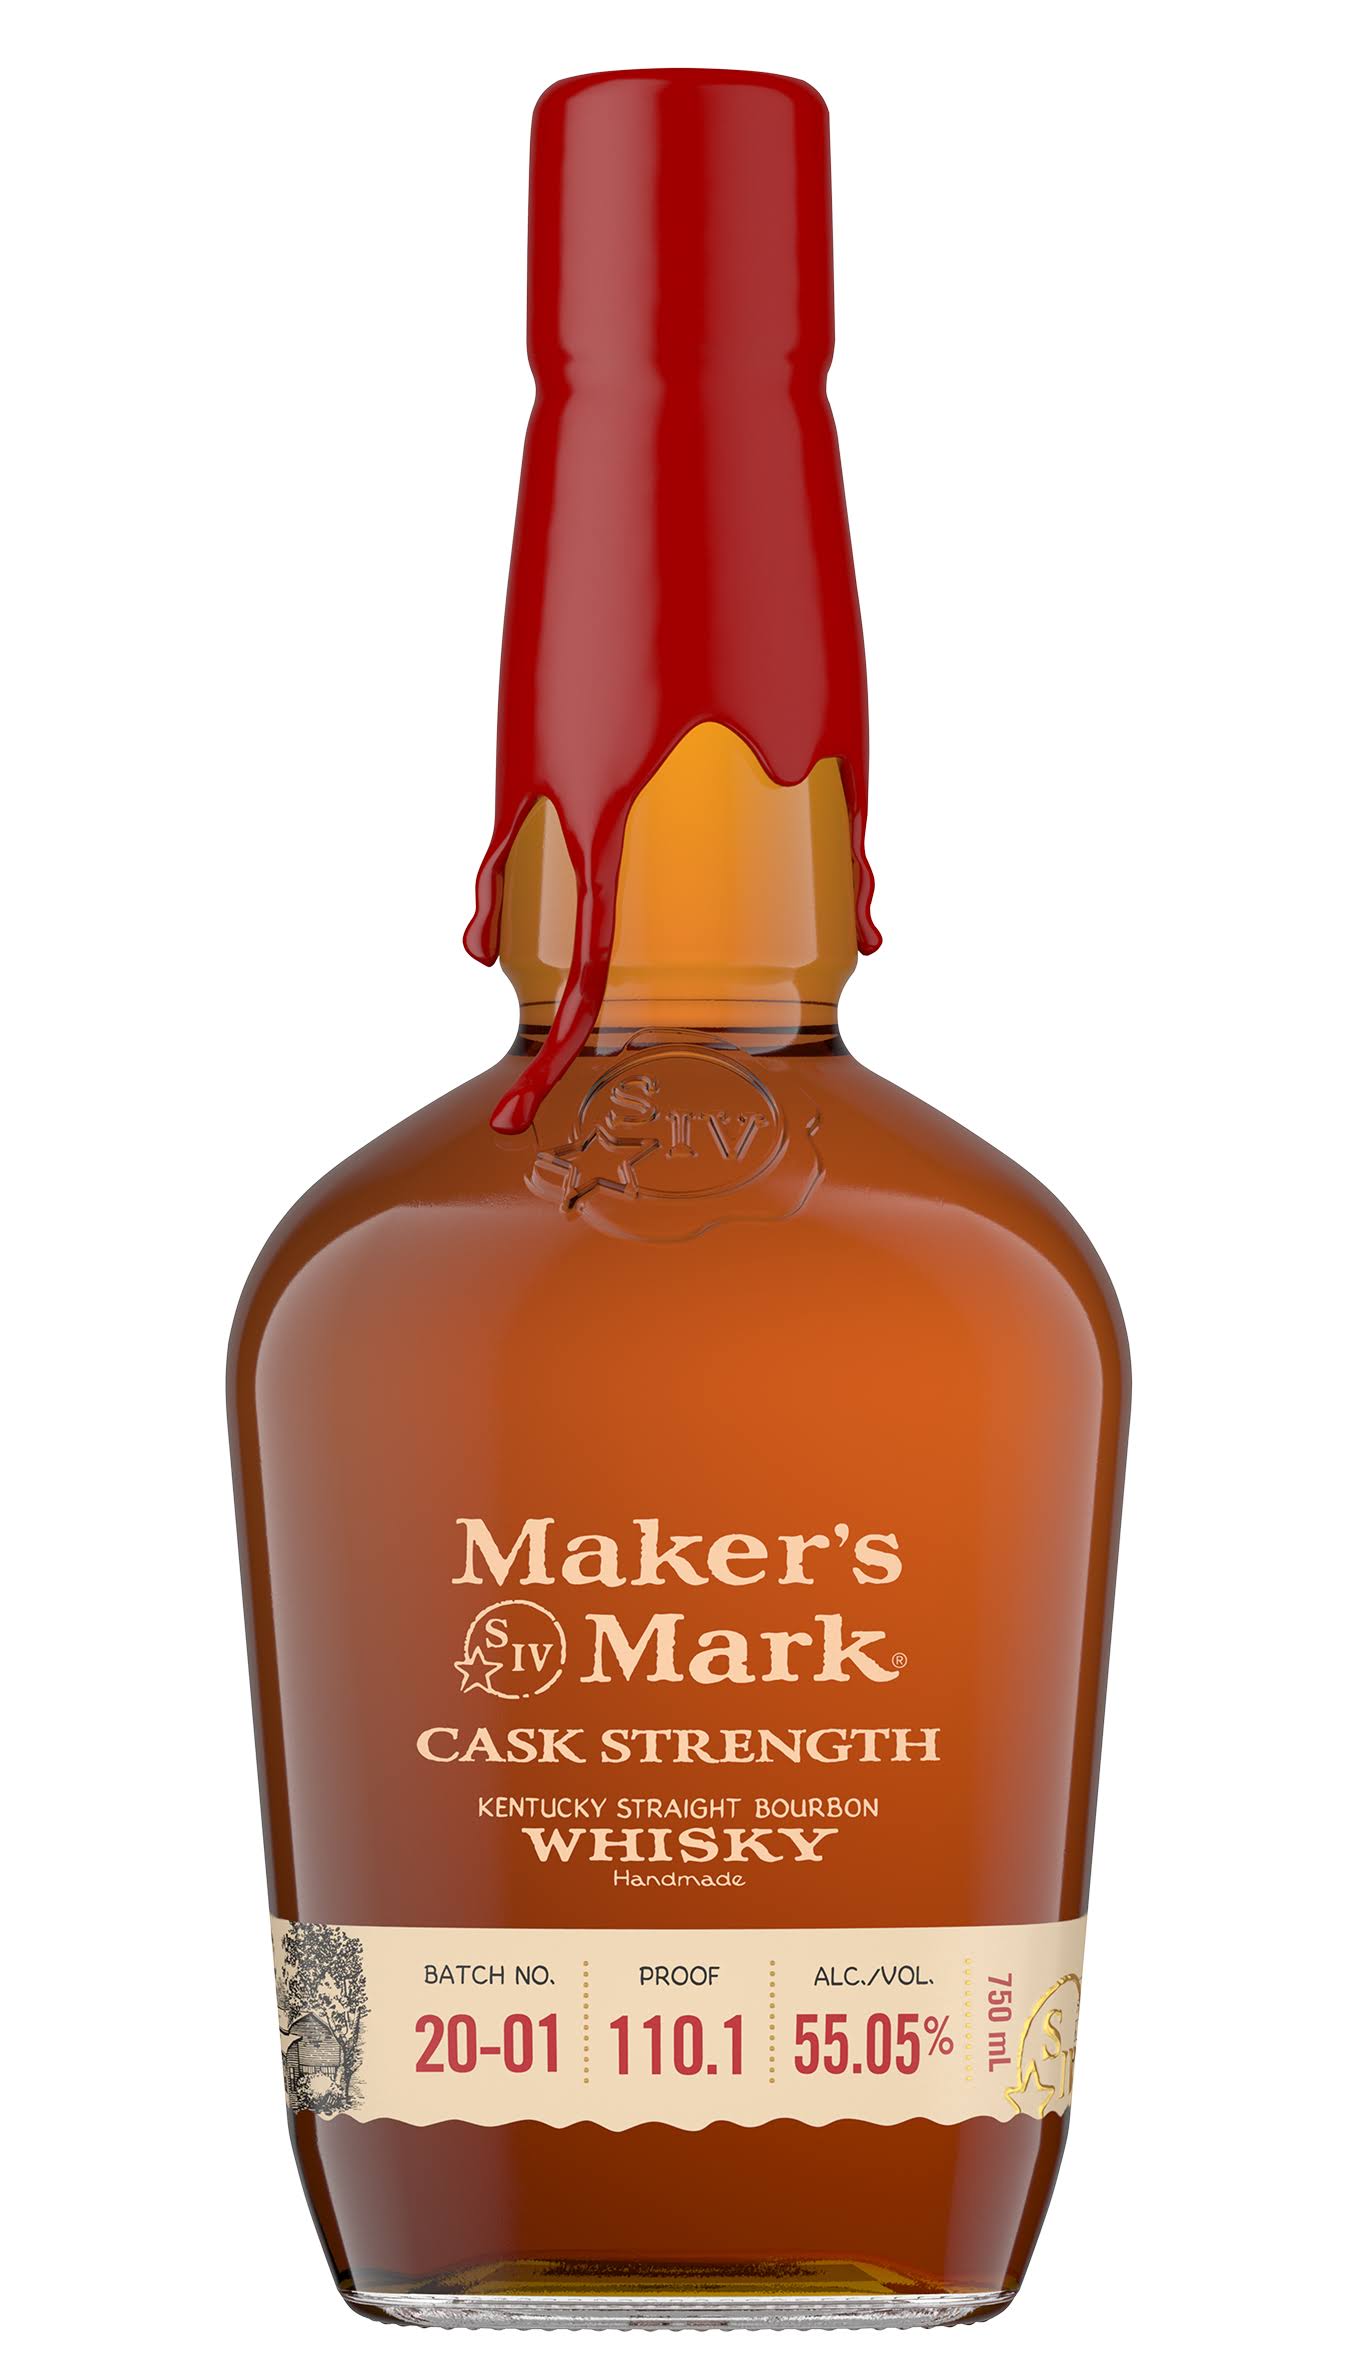 Maker's Mark Cask Strength Bourbon Whiskey - 750 ml bottle